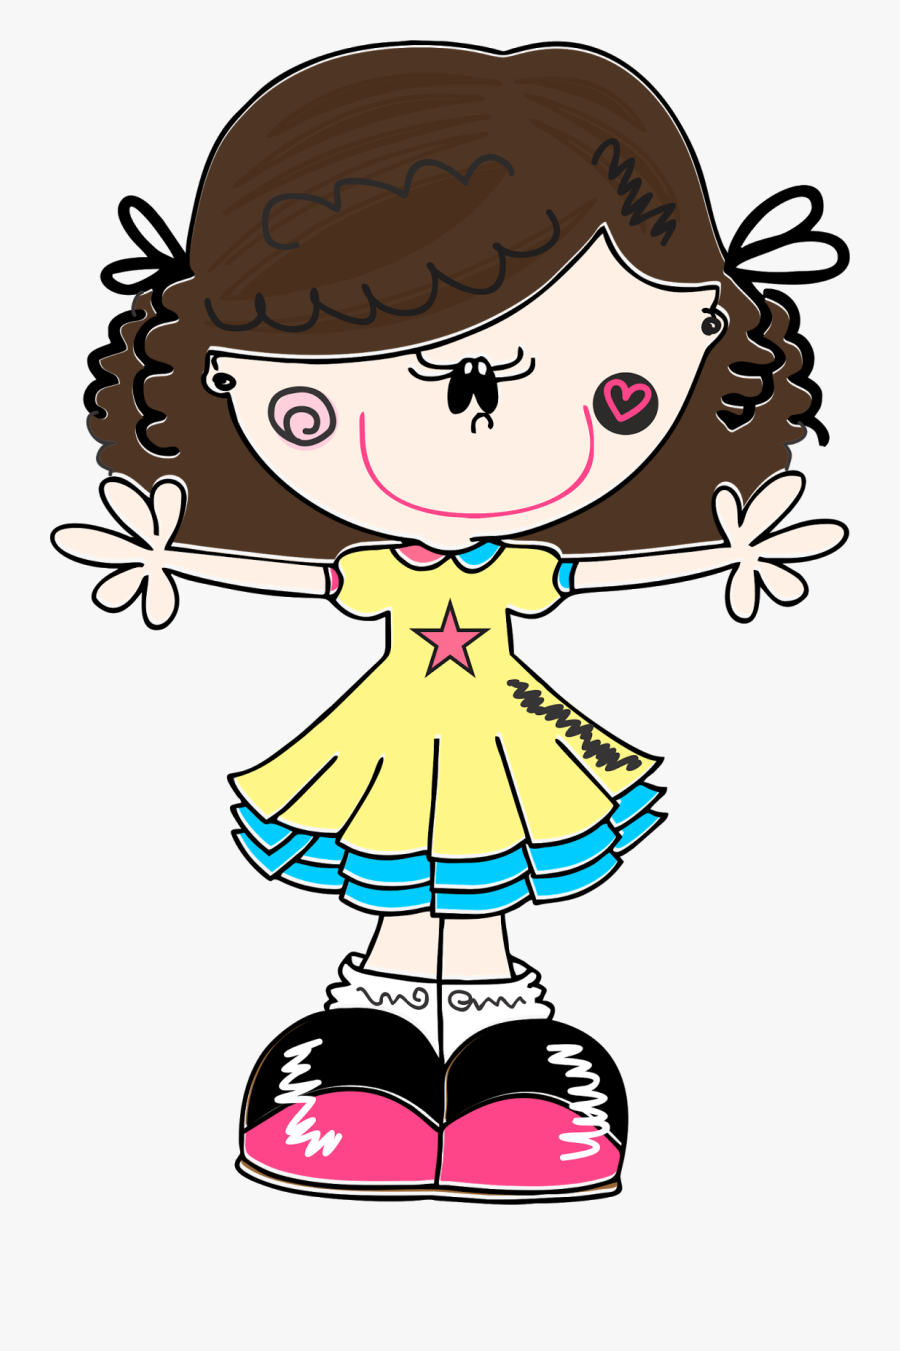 Bonecas * Meninas Clipart, Hello Kitty, Graphic Art, - Desenhos De Bonecas Coloridas, Transparent Clipart